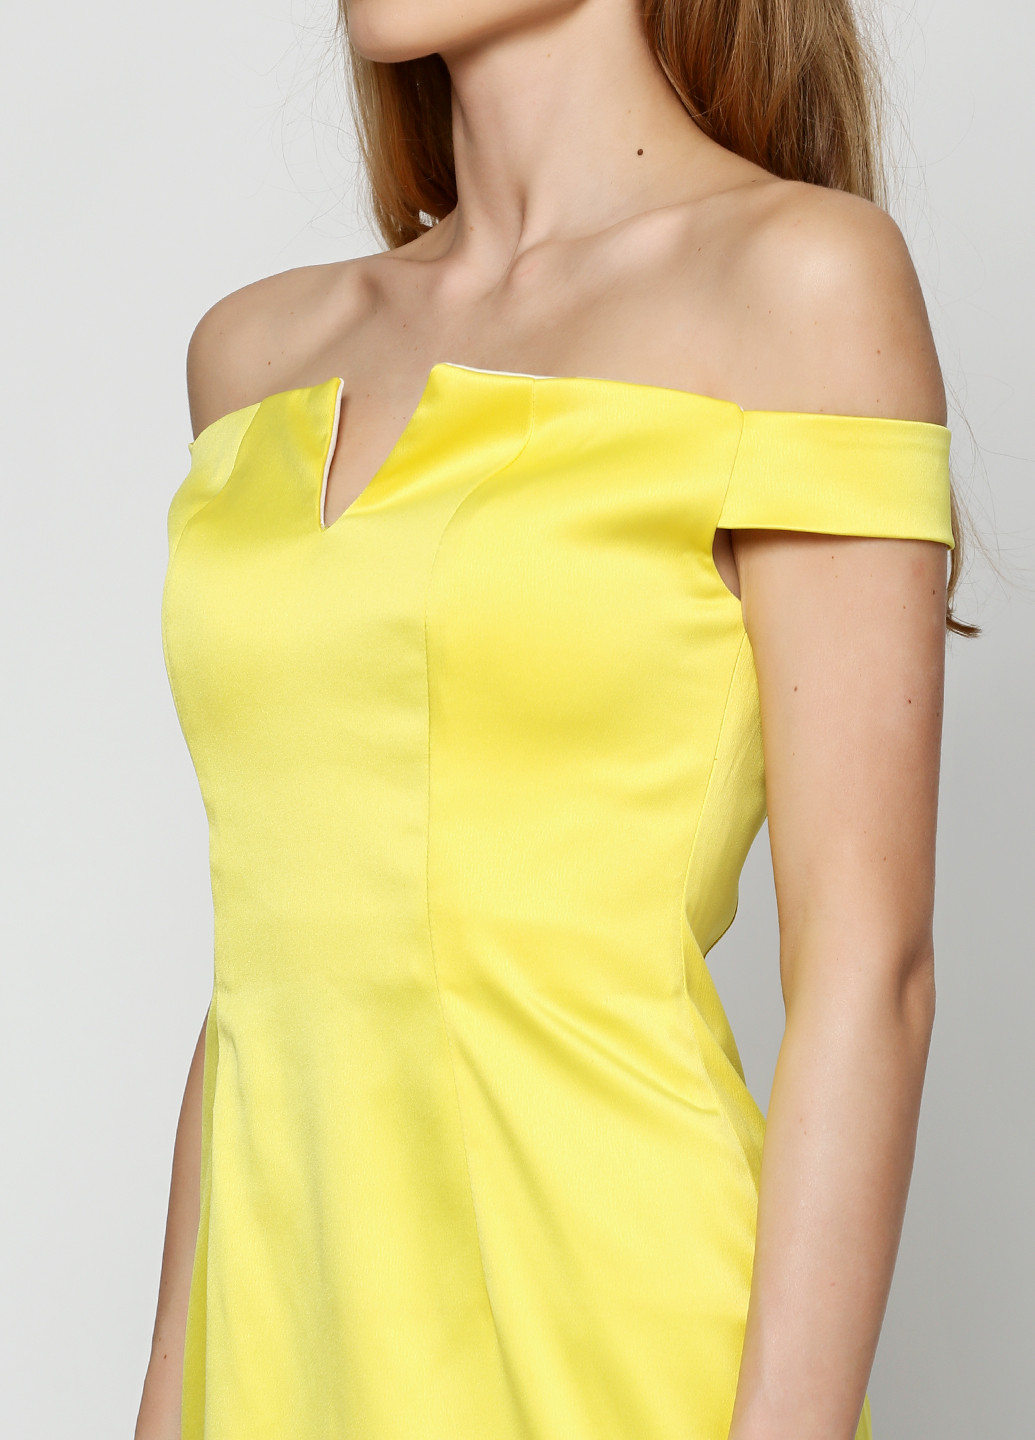 Жовтий коктейльна плаття, сукня Ut однотонна